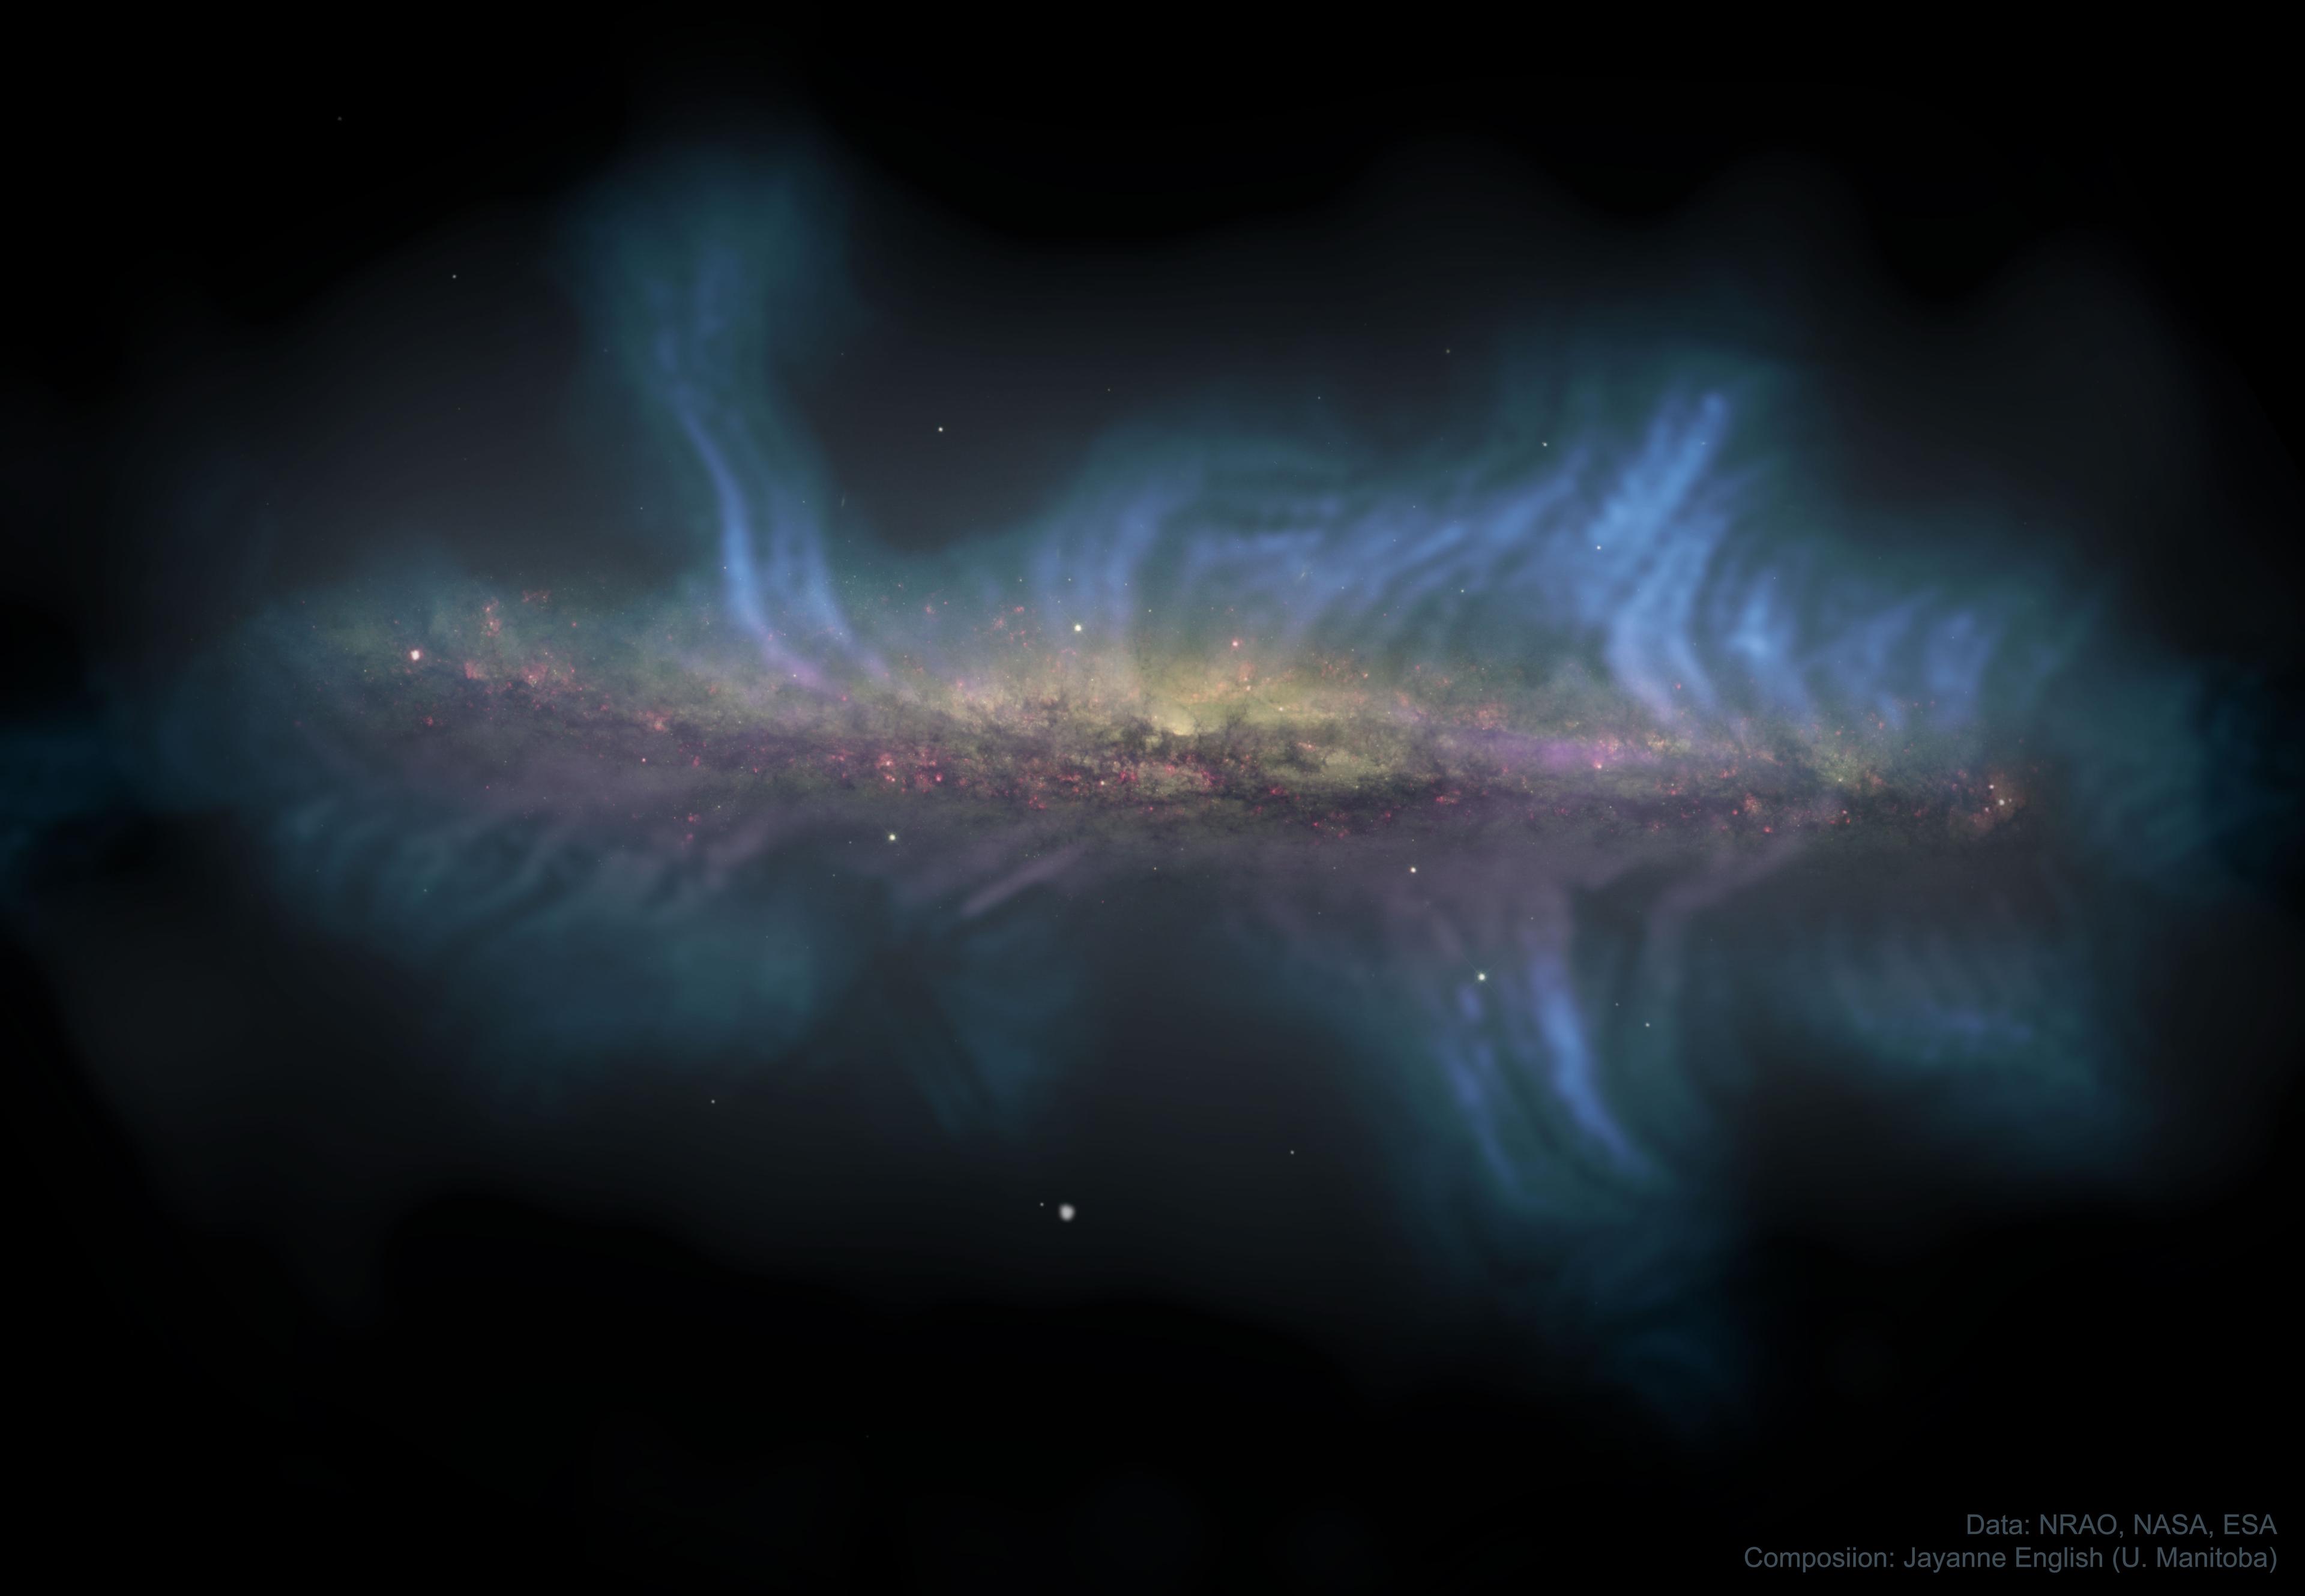 المجرة الحلزونية إن‌جي‌سي 5775 والتي تظهر لنا من جهة حافّتها، يحيط بها خيوط توضّح مسارات المجال المغناطيسي. تظهر في الصورة كذلك المناطق الغازيّة وردية اللون حيث تولد النجوم.